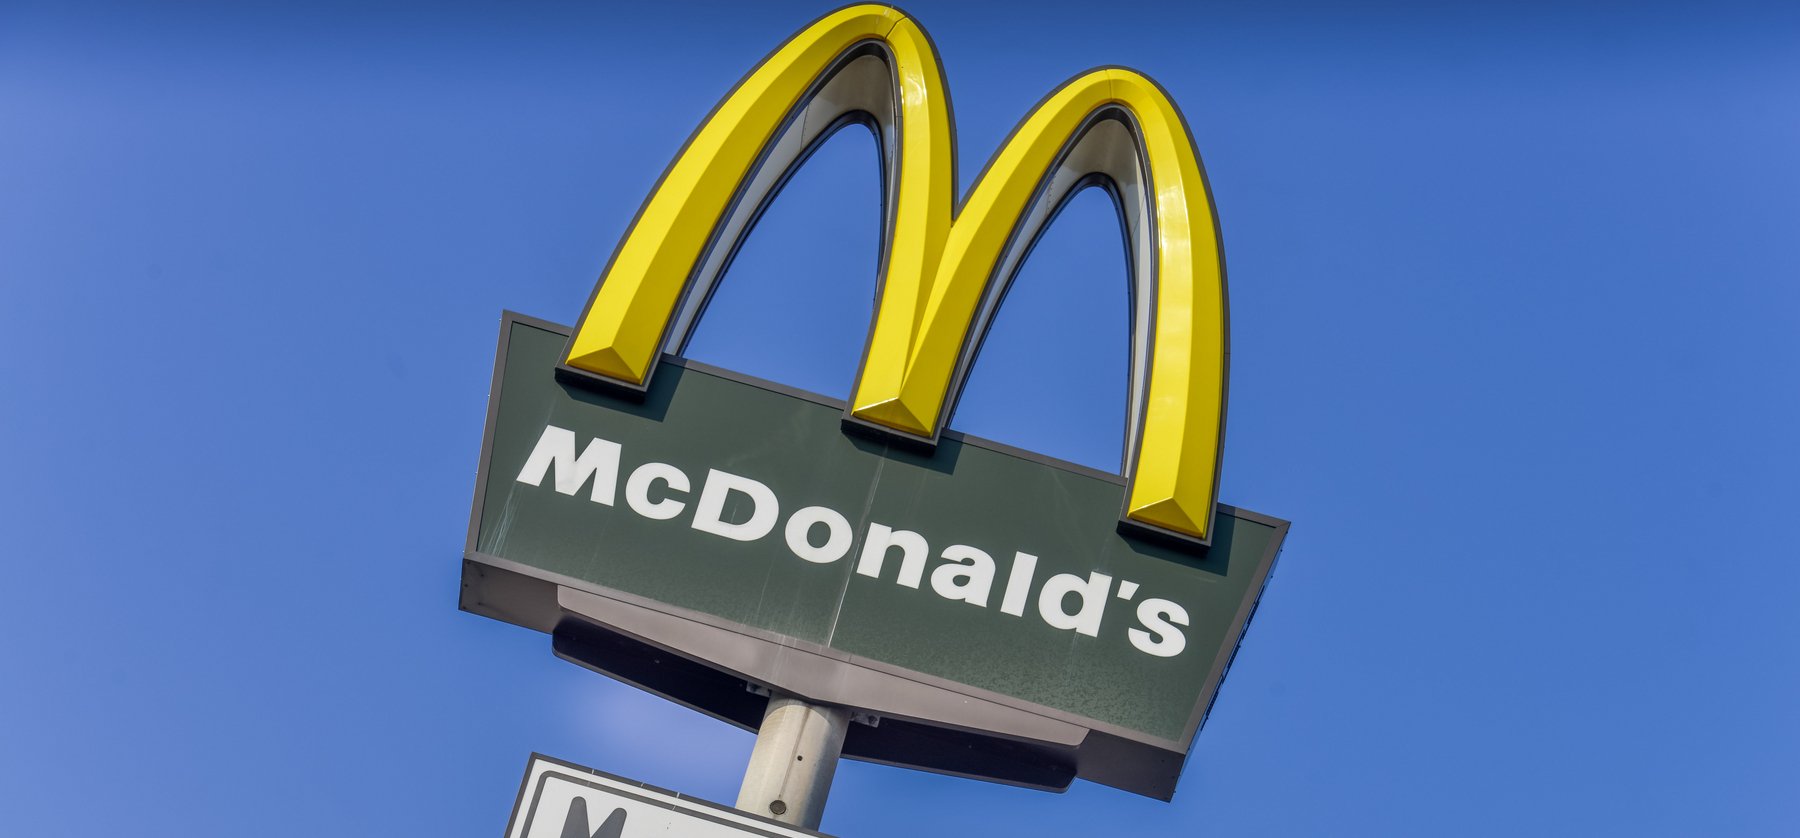 Átver minket a McDonald's? Felháborító videó terjed az interneten